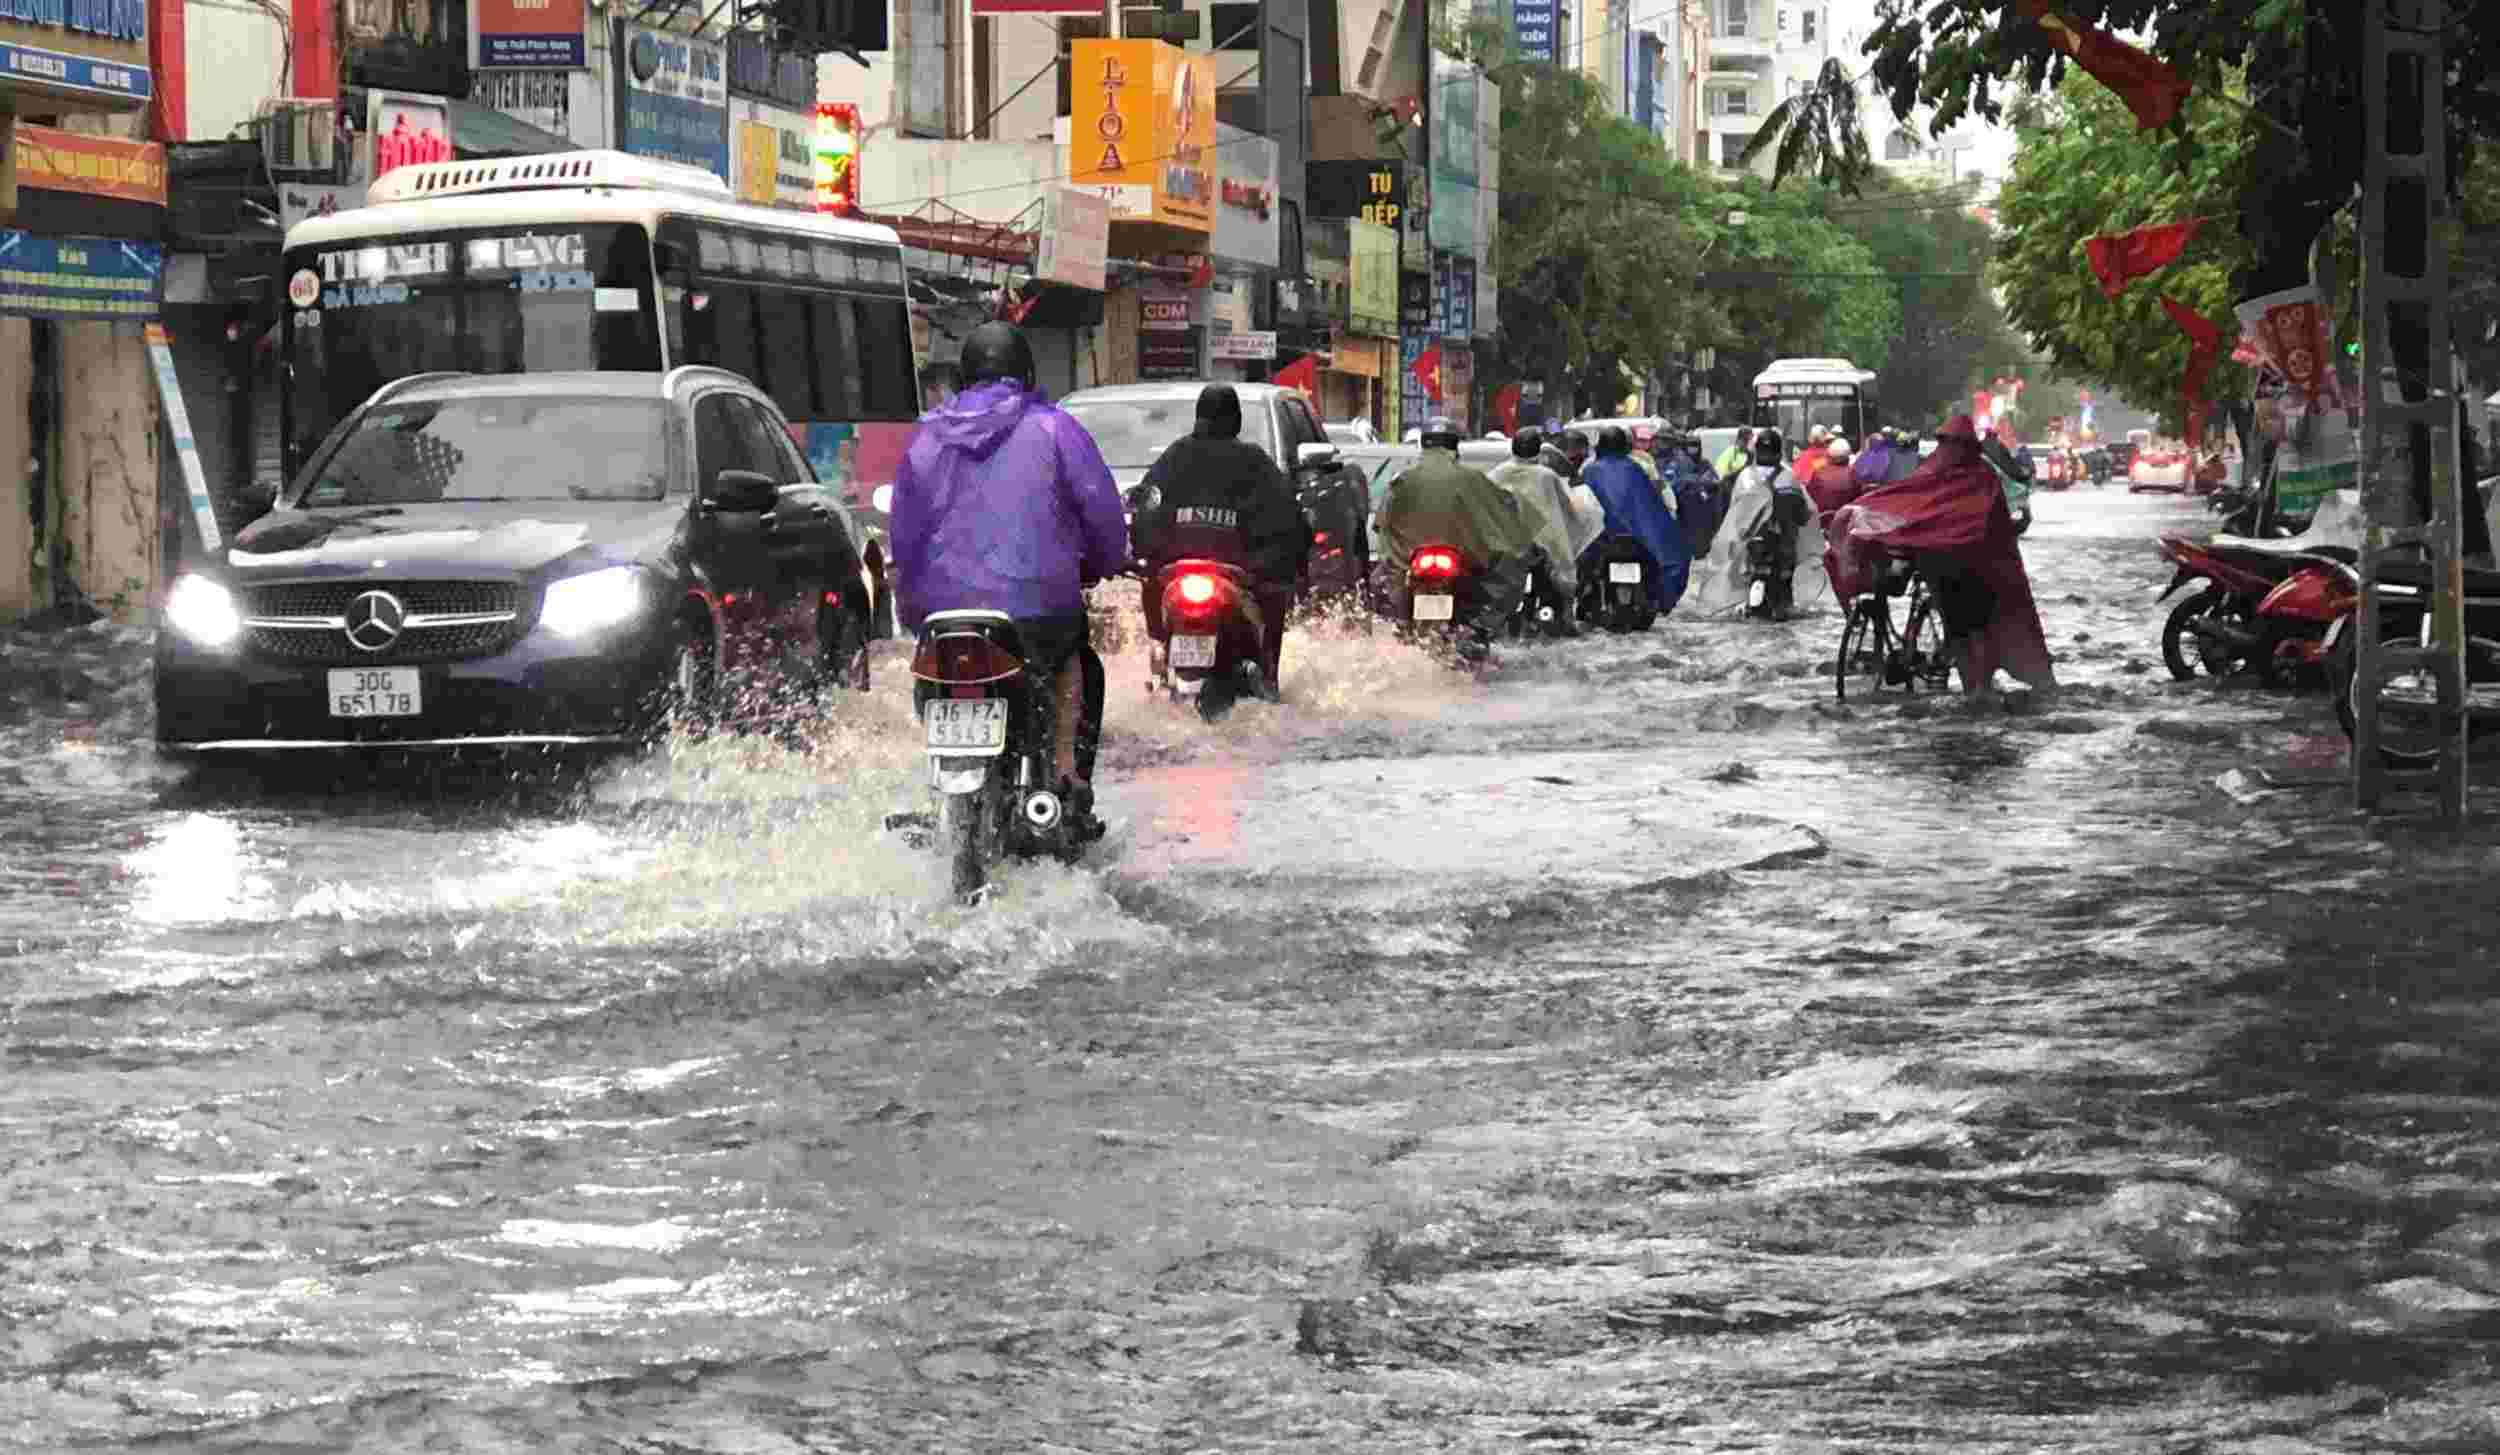 Từ 5h sáng nay, nhiều khu vực ở Hải Phòng xảy ra mưa lớn. Tại trung tâm thành phố, mưa lớn kéo dài khiến nhiều tuyến phố ngập lụt, giao thông khó khăn, nhất là vào thời điểm gần trưa. Ảnh: Thu Hà